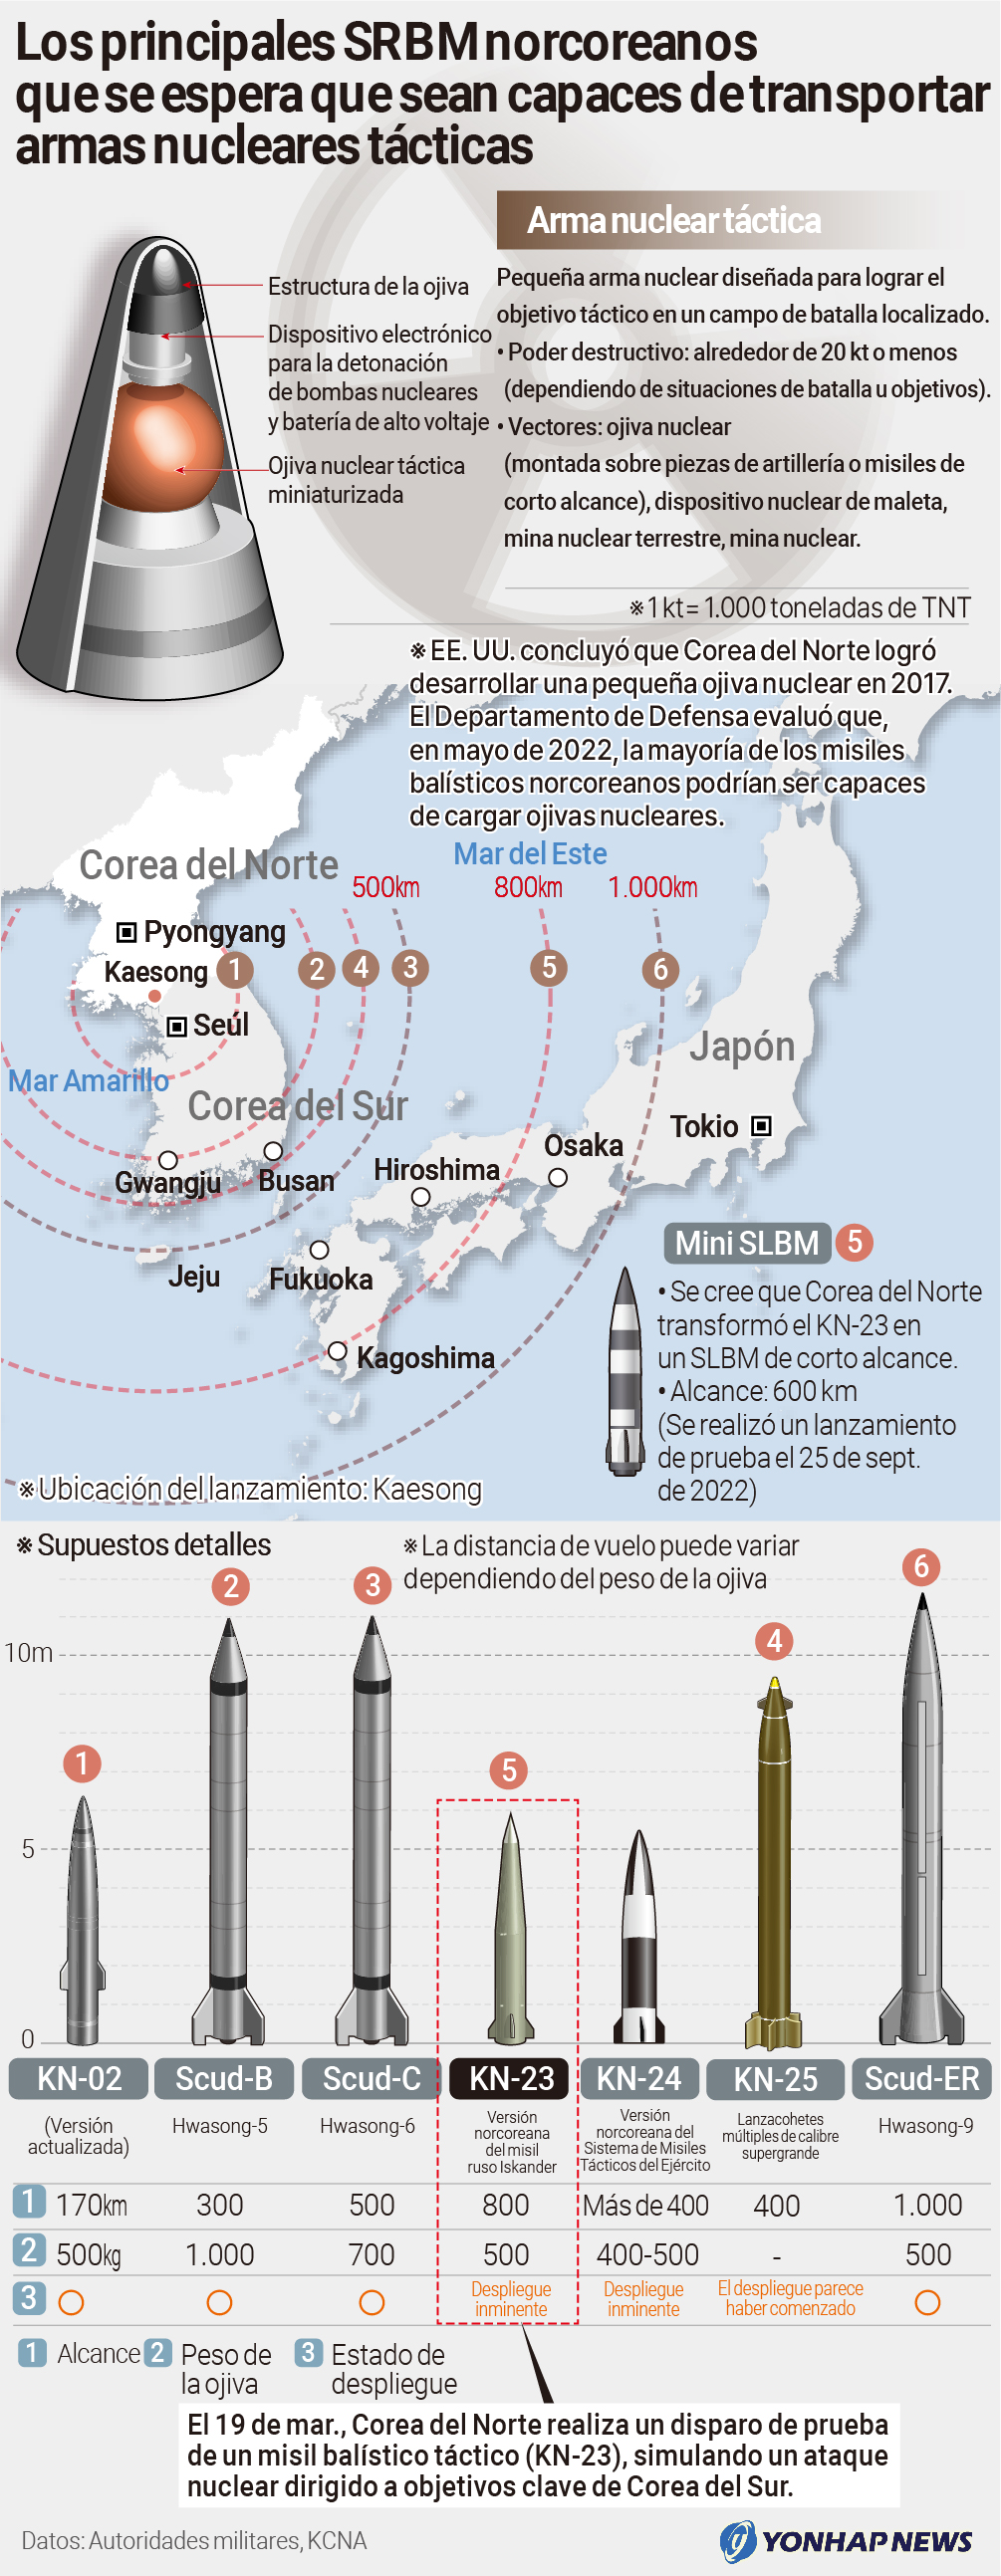 Los principales SRBM norcoreanos que se espera que sean capaces de transportar armas nucleares tácticas